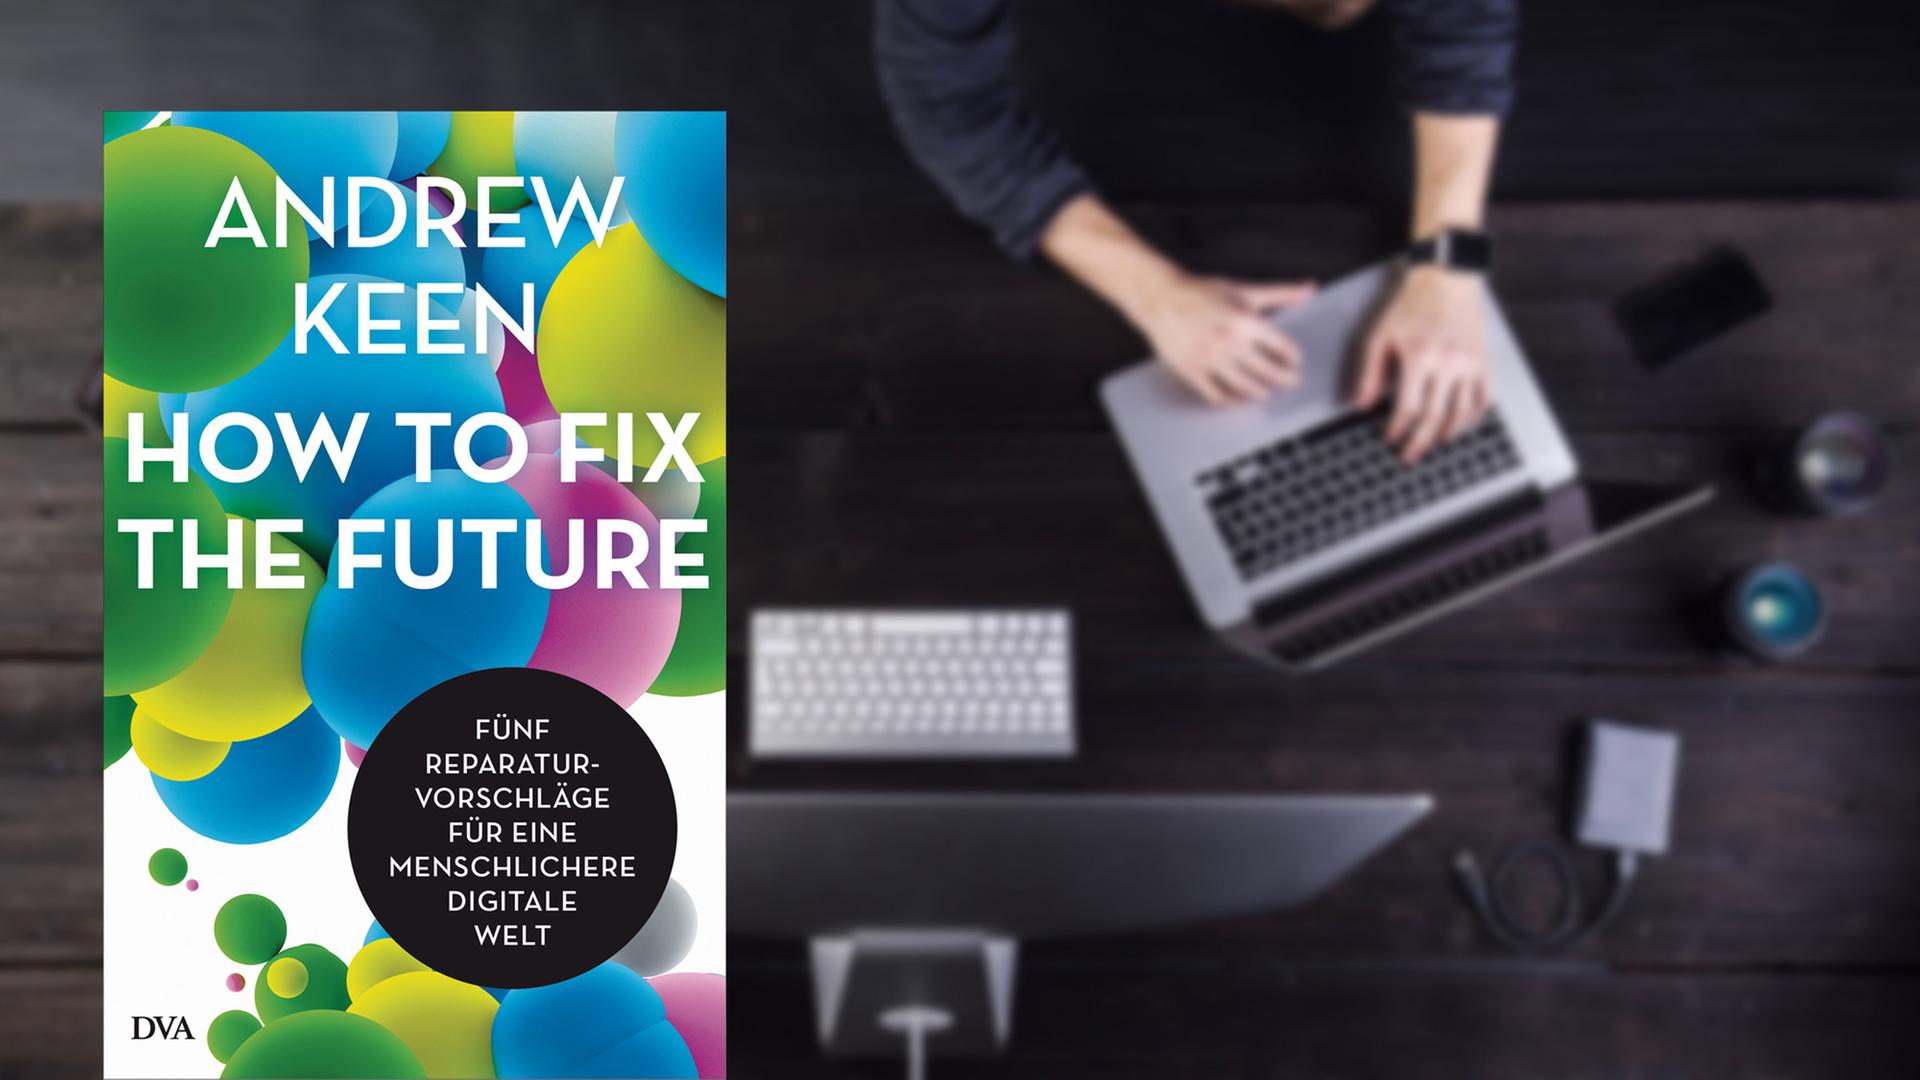 Buchcover: Andrew Keen: "How to fix the future. Fünf Reparaturvorschläge für eine menschlichere digitale Welt" (DVA)